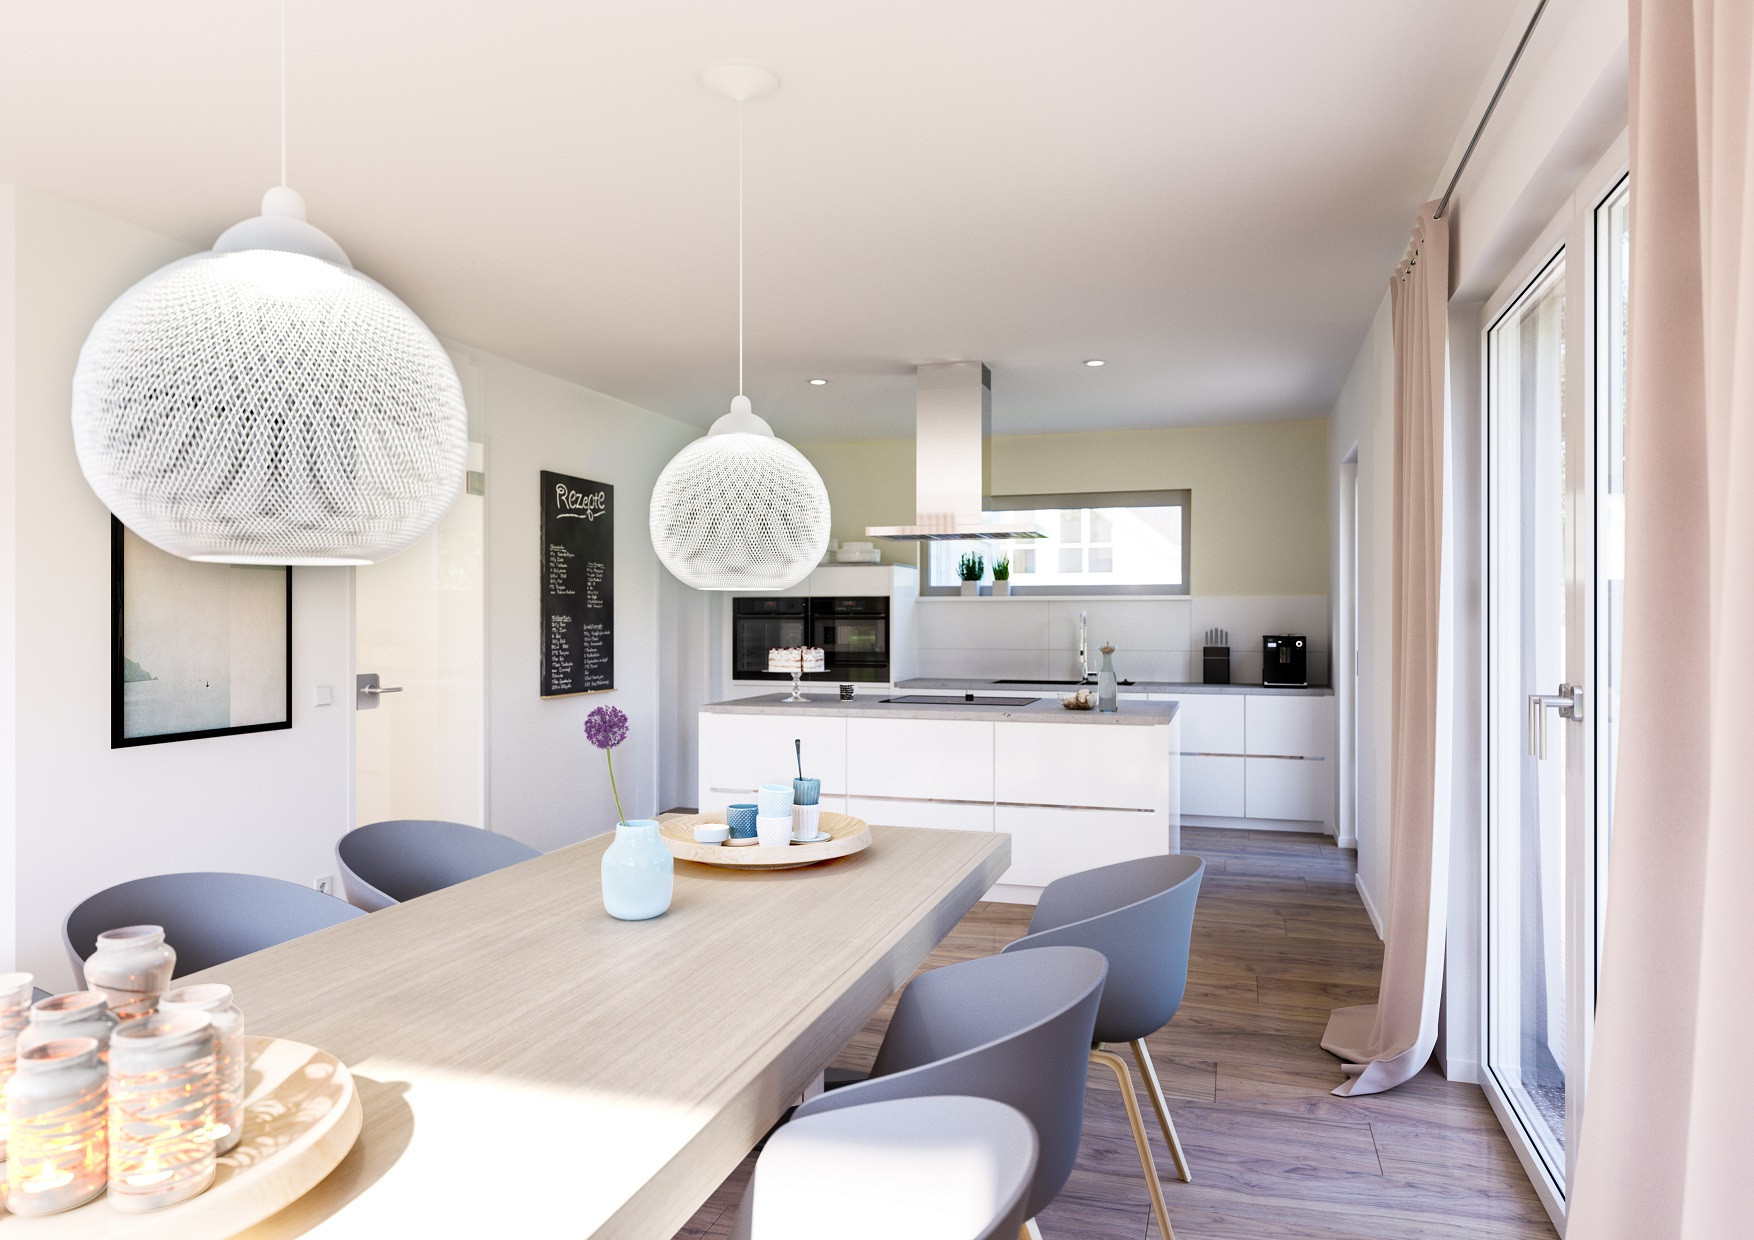 Offene Küche: 3 Grundrissideen - Raum Für Das Wahre Glück pertaining to Küche Esszimmer Wohnzimmer In Einem Raum Grundriss